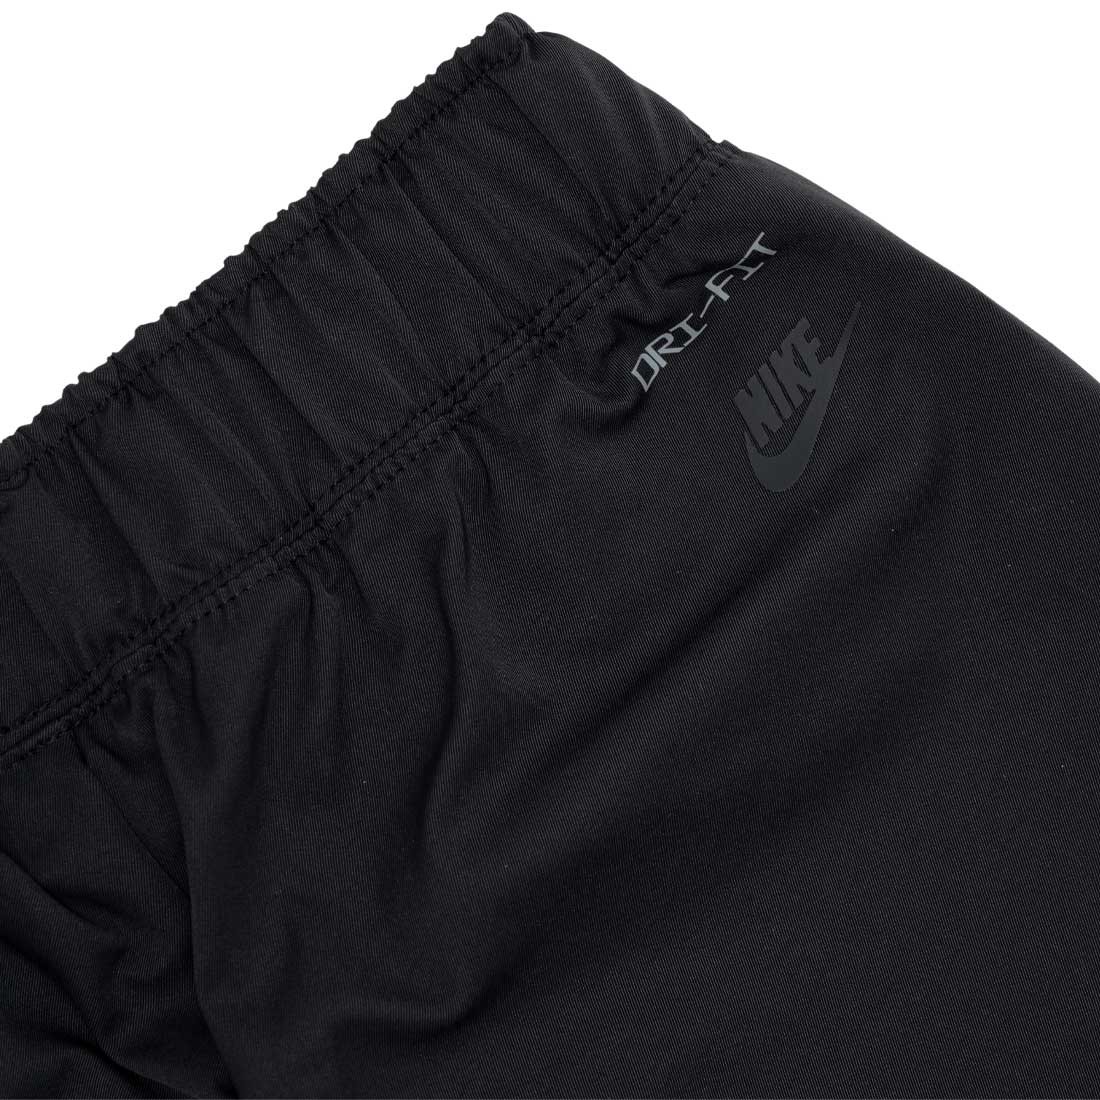 Nike Sportswear Dri-FIT Tech Pack Women's Mid-Rise Woven Pants